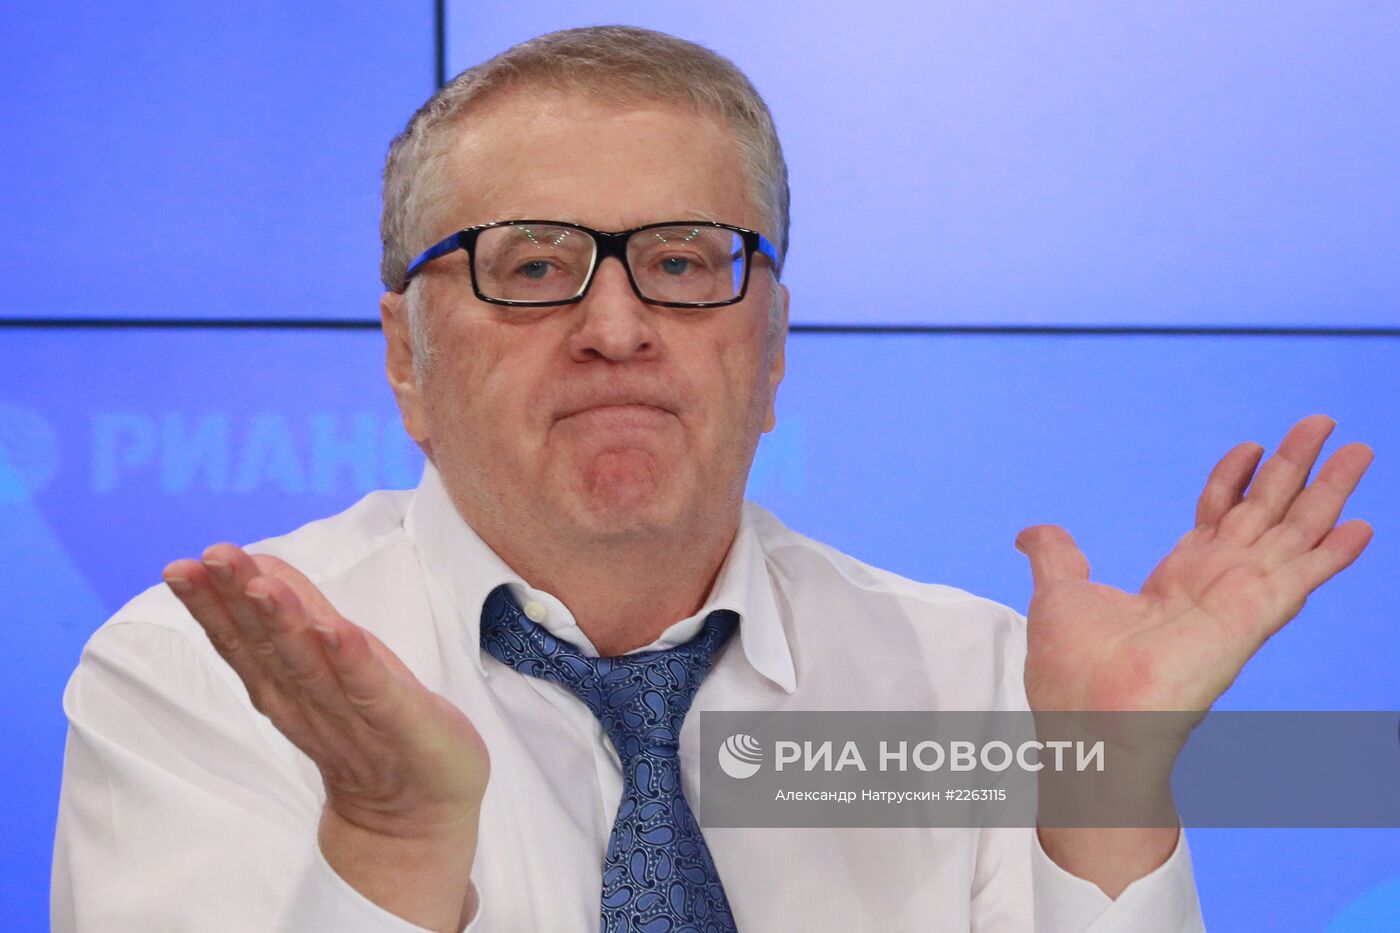 Пресс-конференция лидера ЛДПР Владимира Жириновского